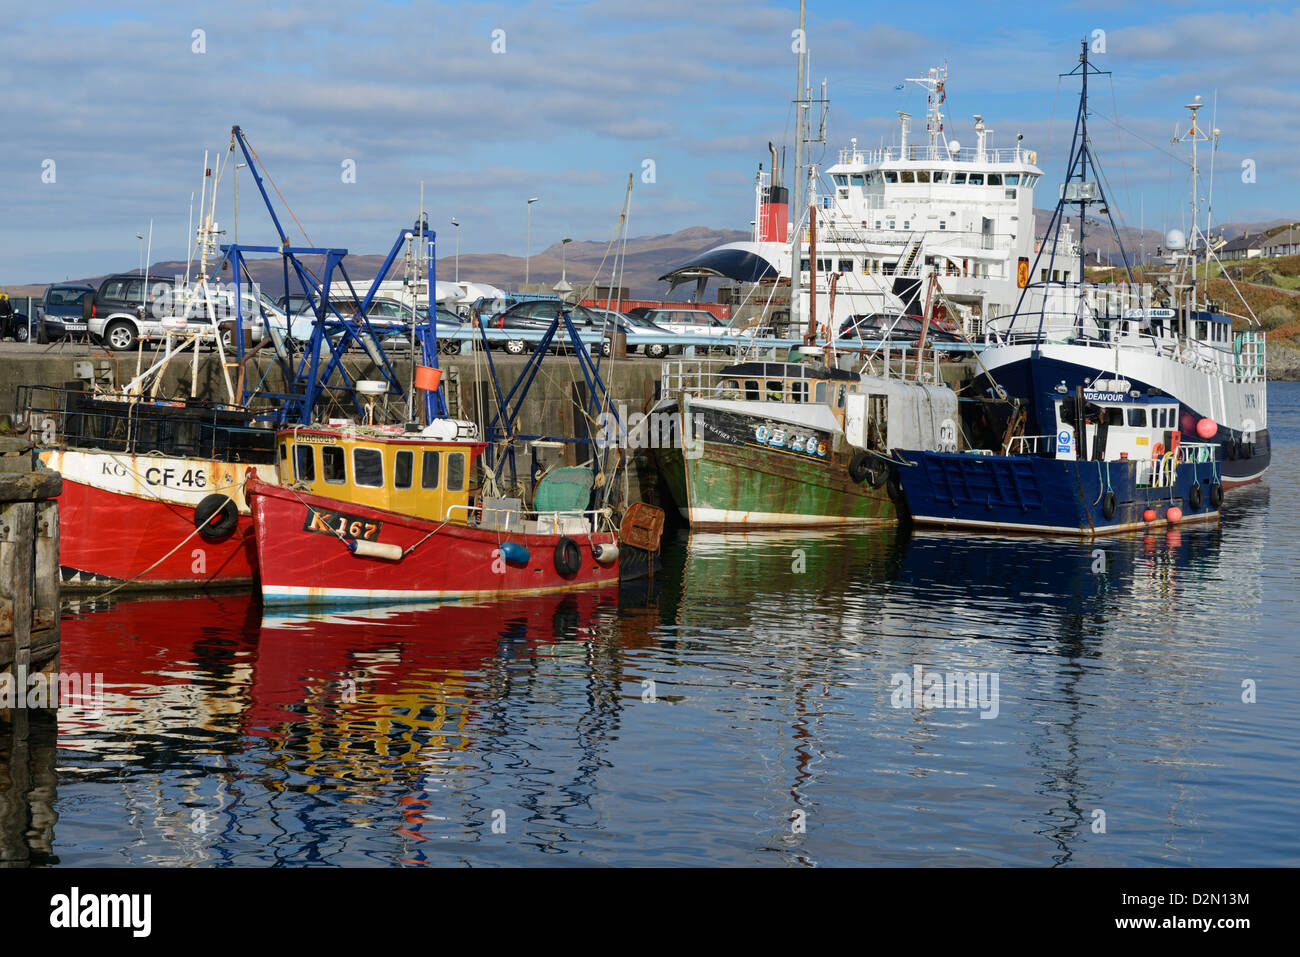 Les bateaux de pêche et de car-ferry dans le port, Mallaig, Highlands, Ecosse, Royaume-Uni, Europe Banque D'Images